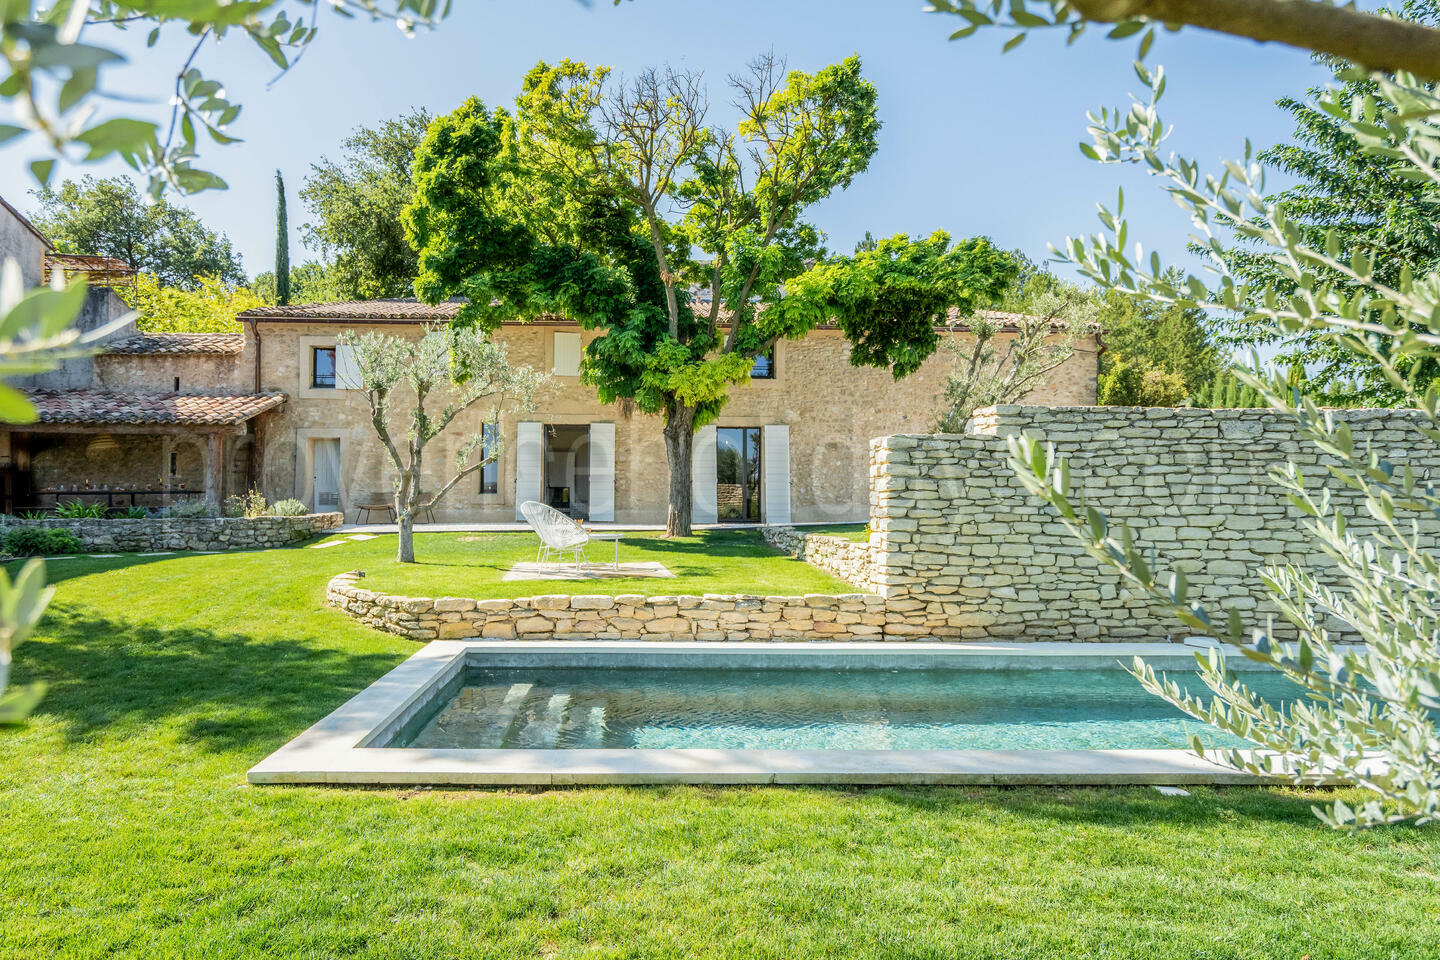 Location de vacances de charme avec piscine chauffée près d'Oppède 1 - Le Mas des Vignes: Villa: Exterior